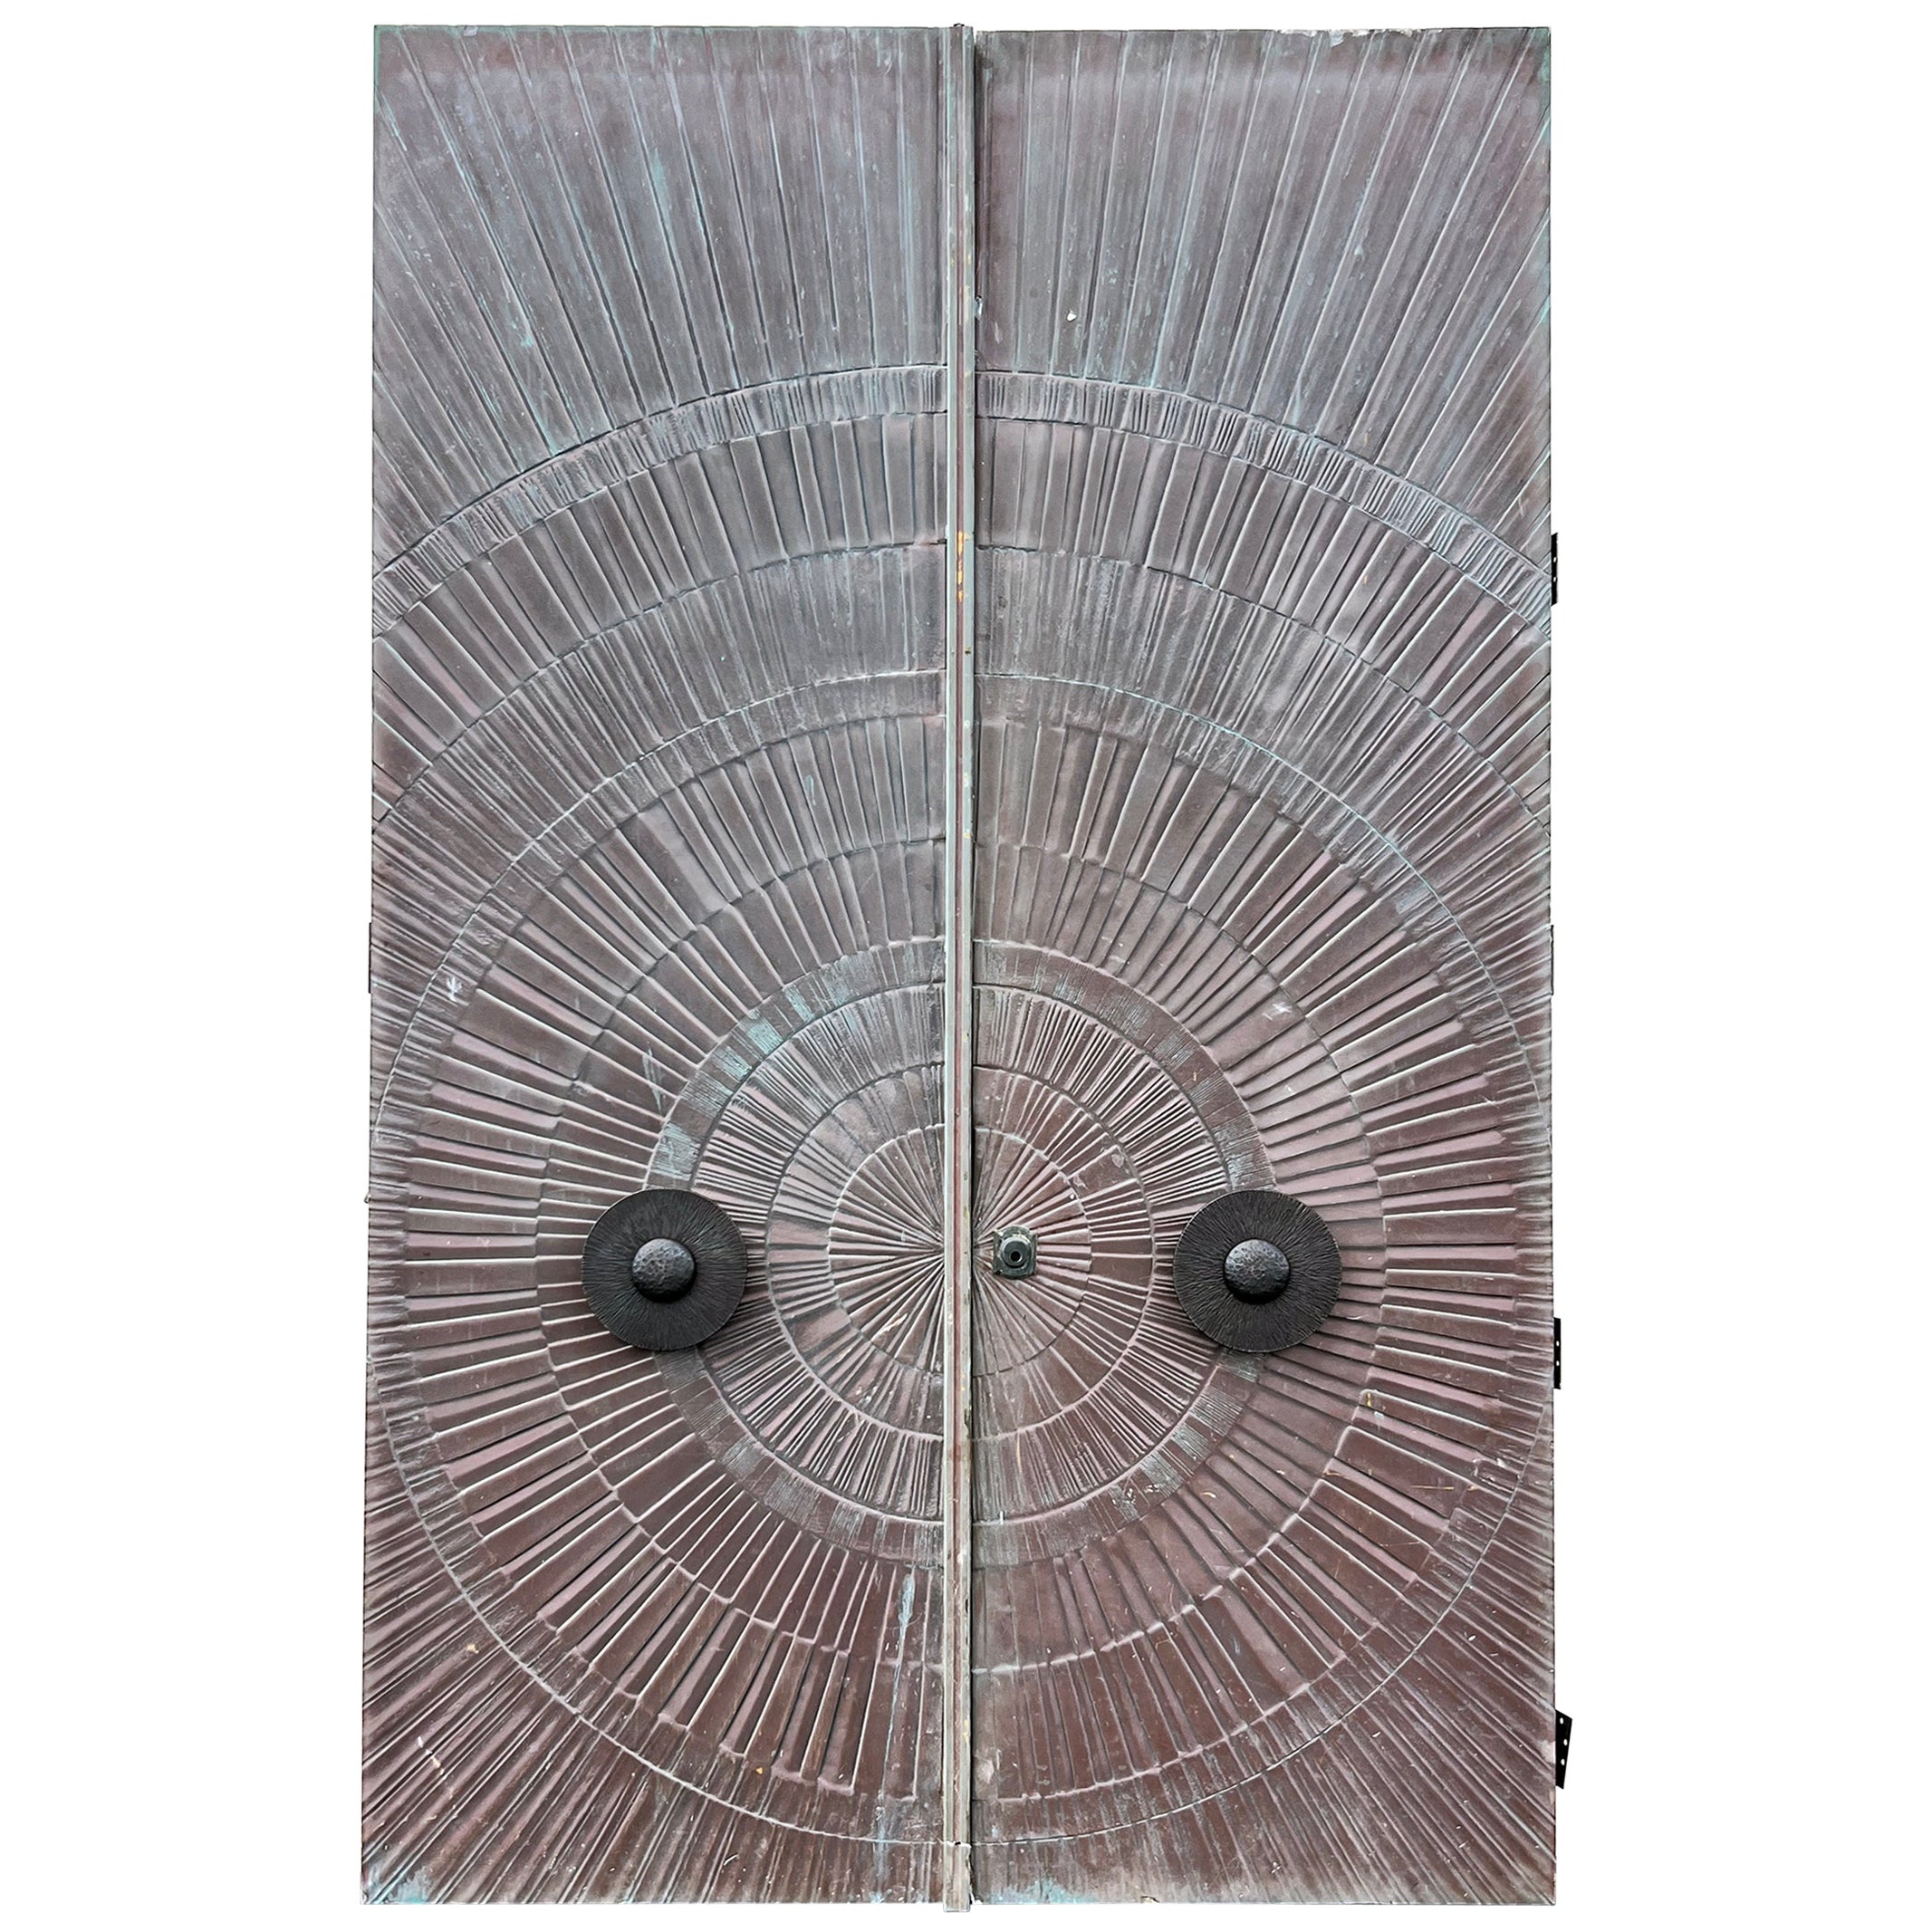 Heroic Sunburst-Doppeltüren aus der Mitte des Jahrhunderts, Bronze, McCarrol & Gillespie, 1971